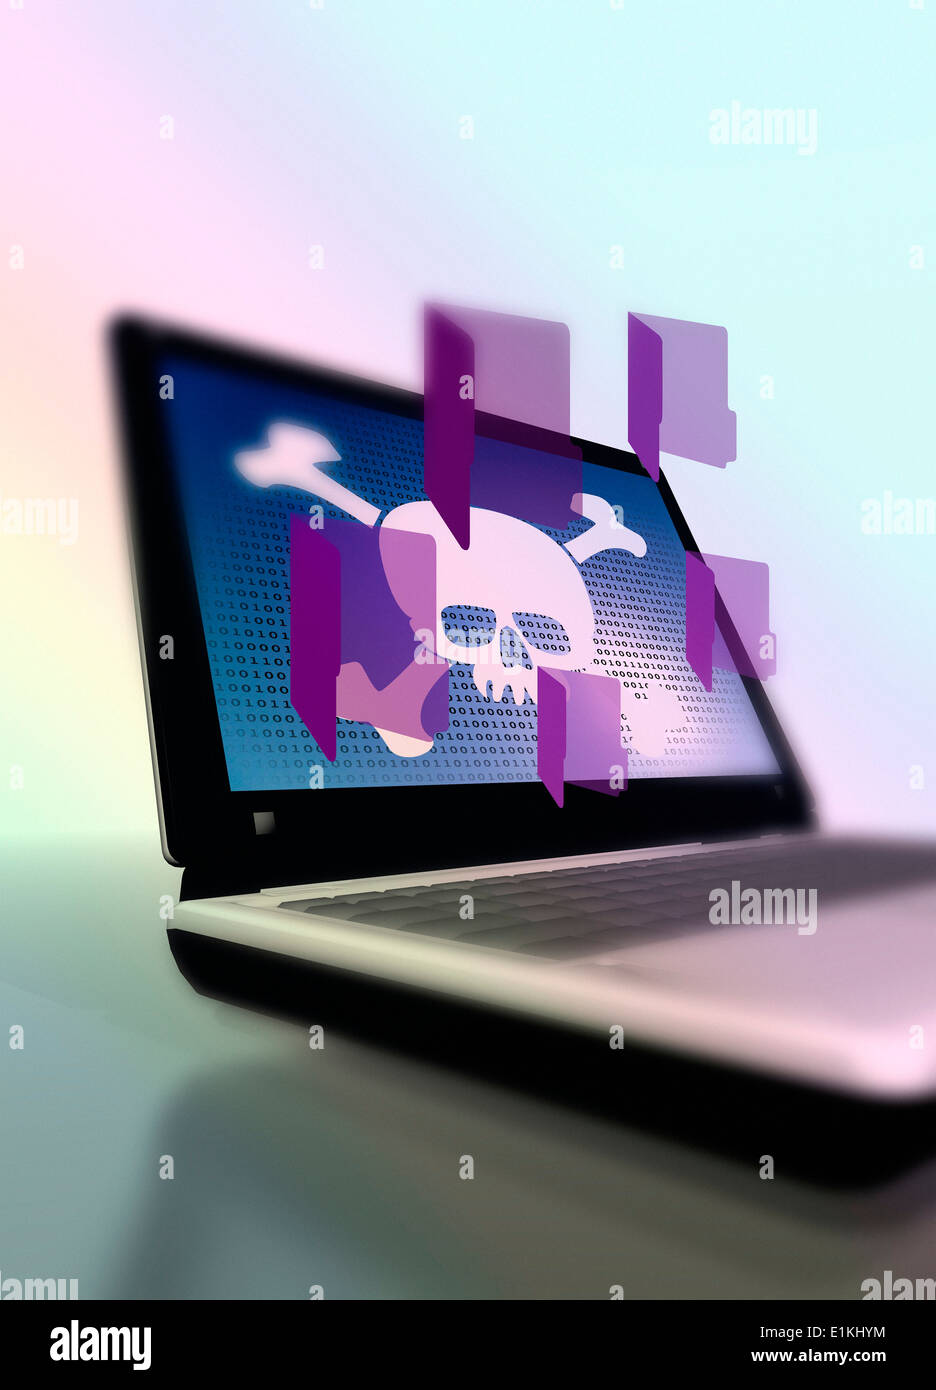 Schädel auf Laptop Daten hacken konzeptuellen Kunstwerk darstellt. Stockfoto